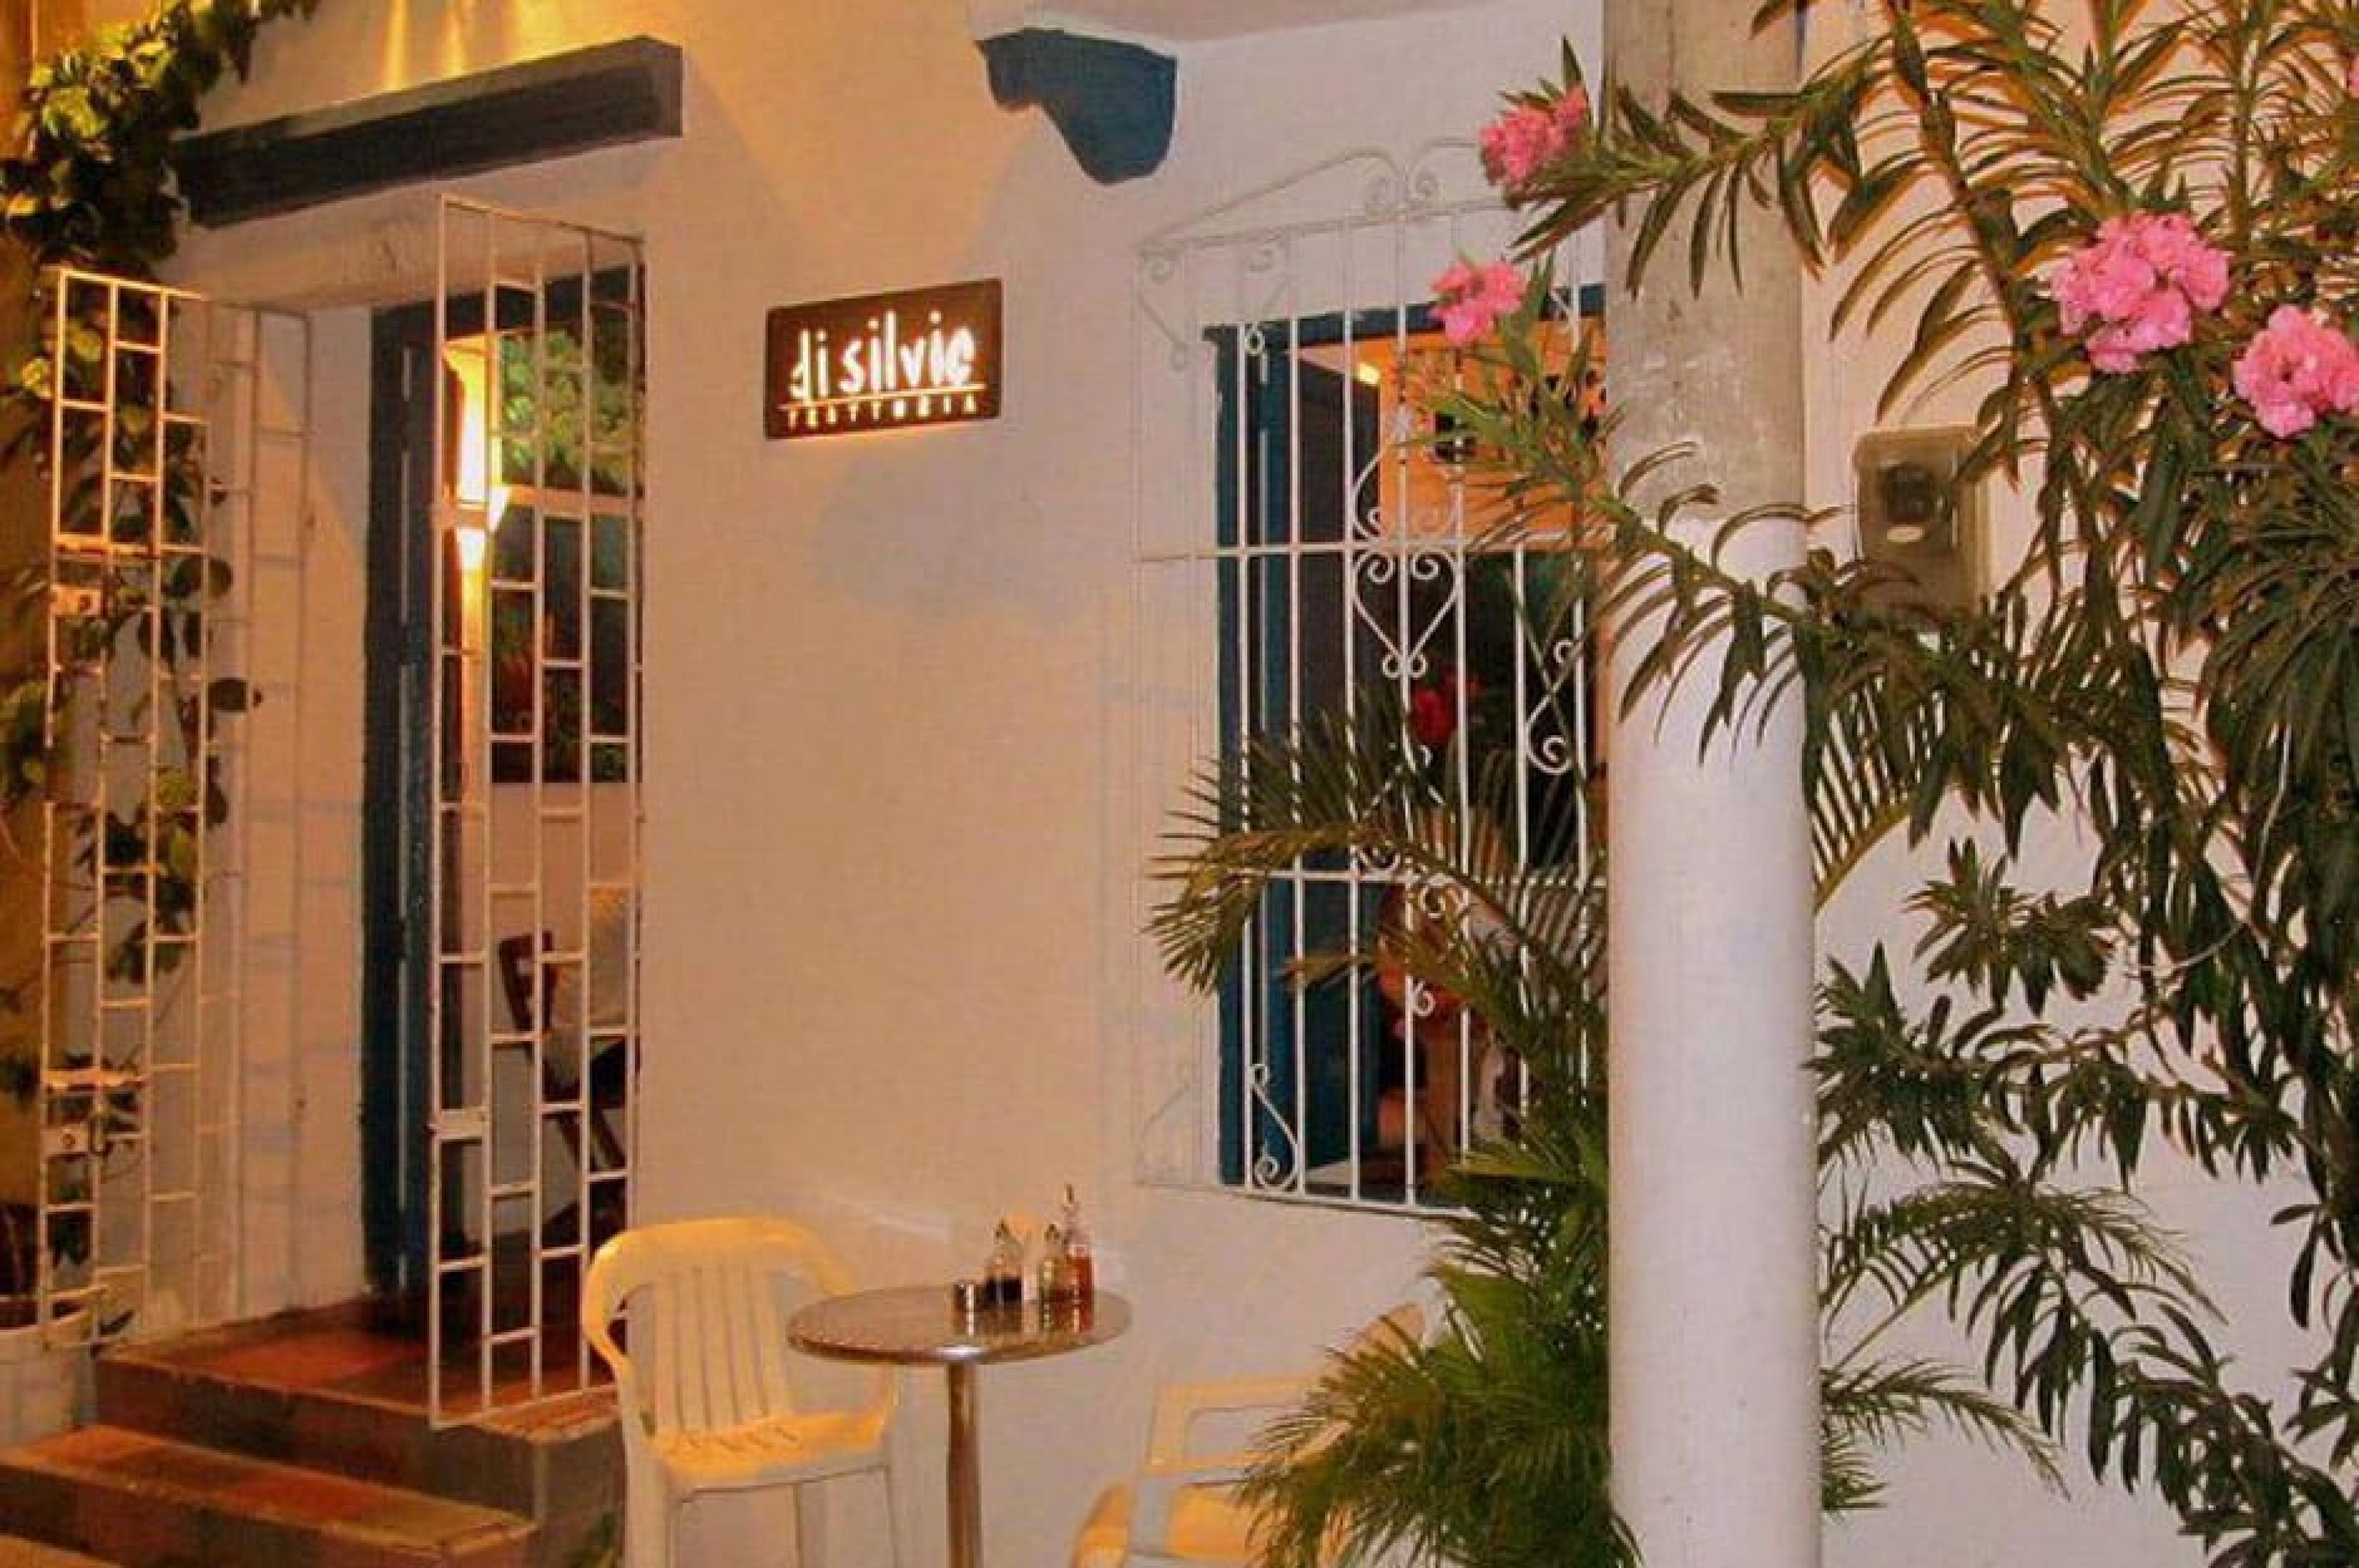 Entrance at Di Silvio Trattoria, Cartagena, Colombia